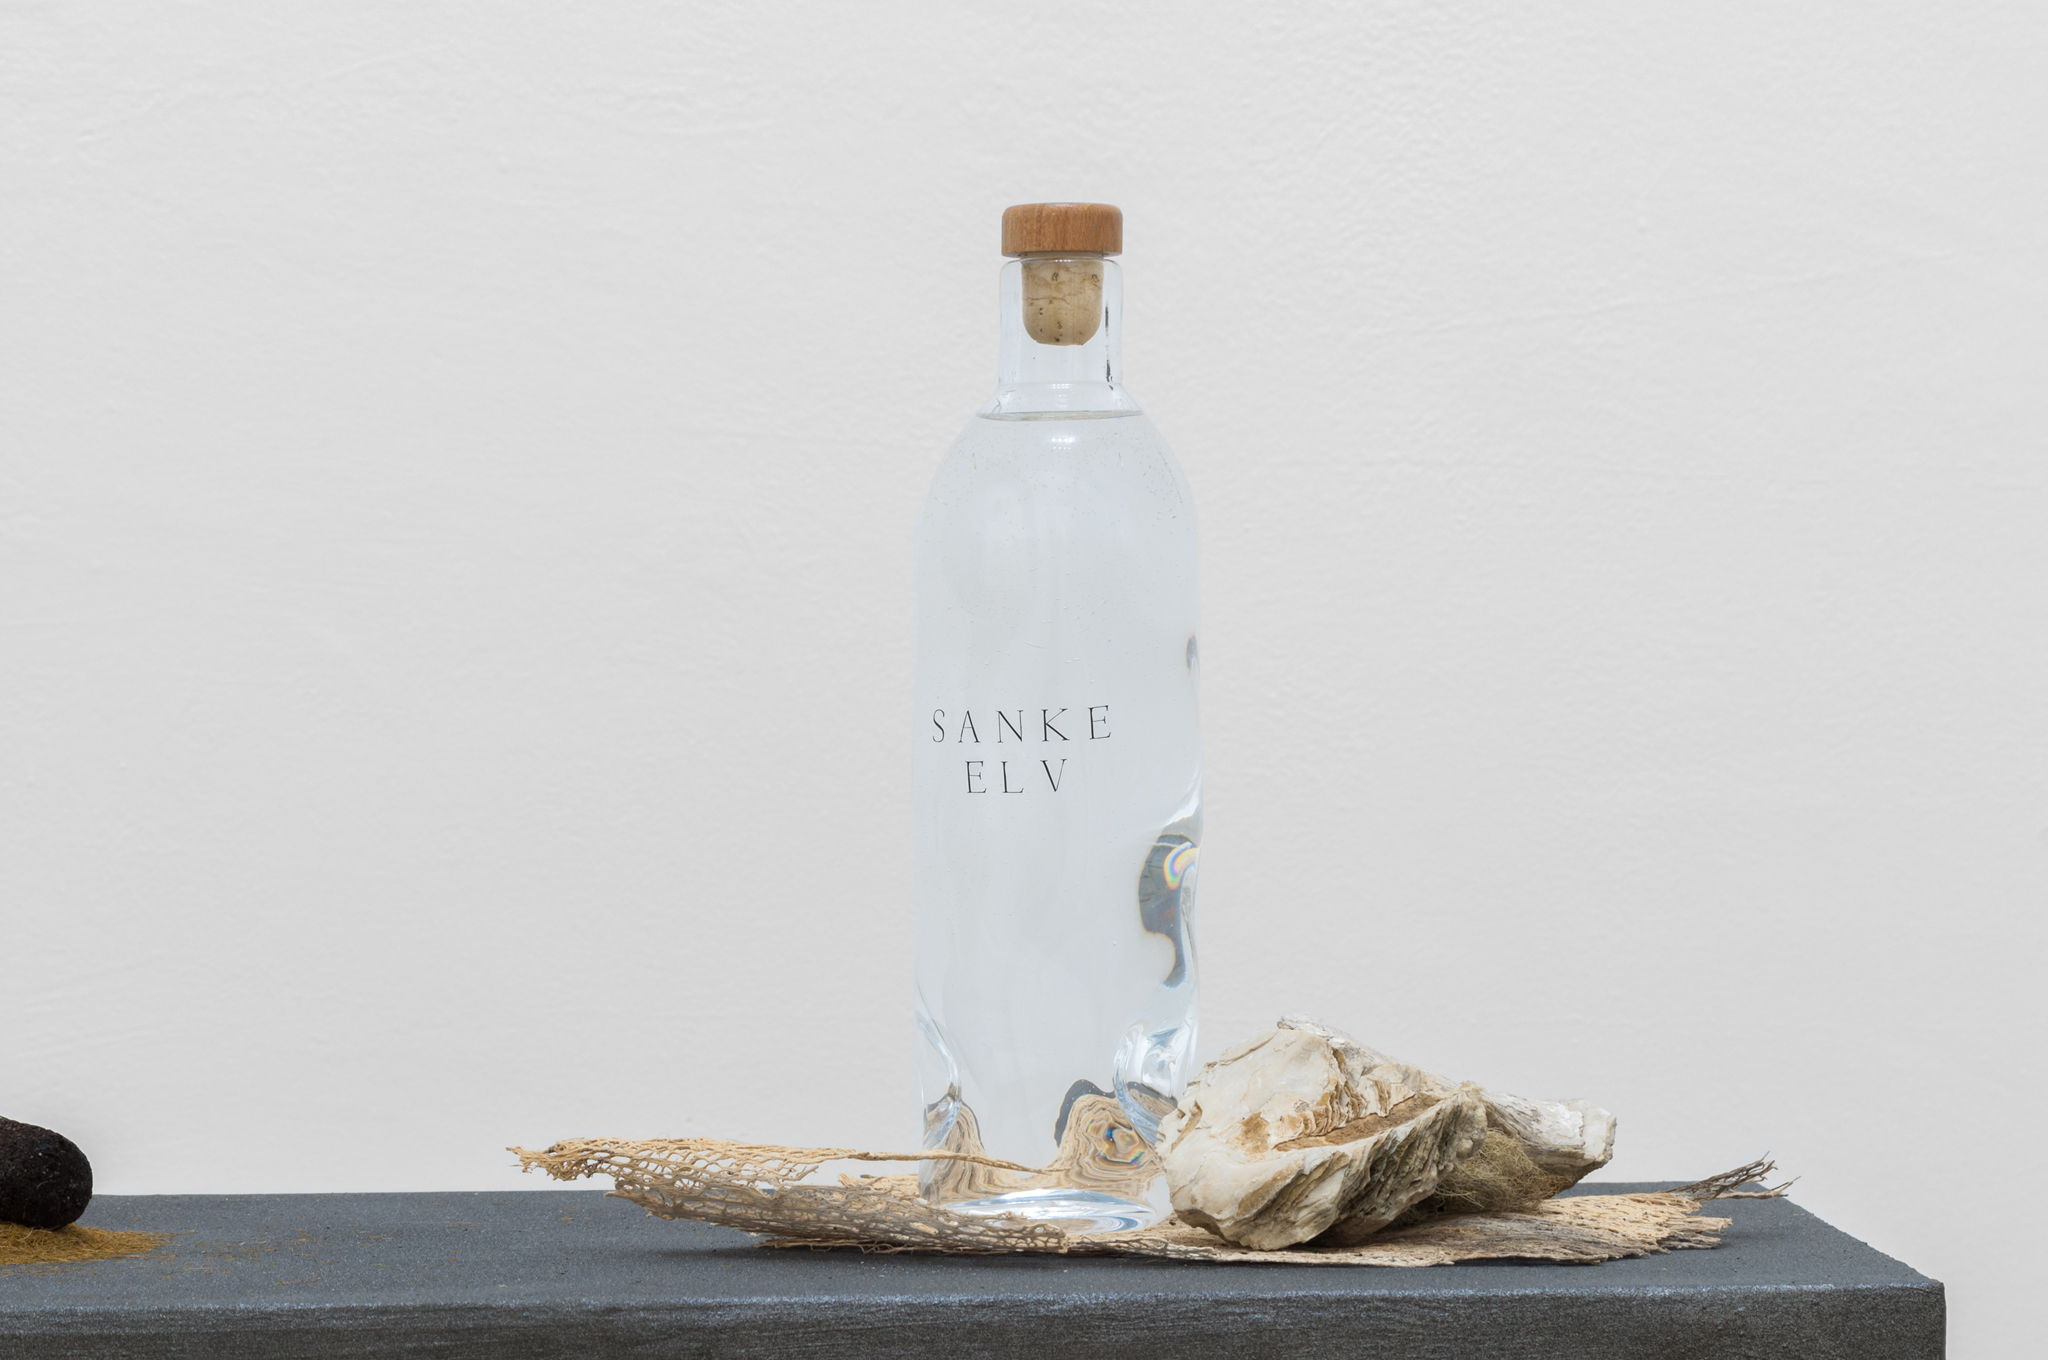 Andreas Ervik, ‘S A N K E’ (2017). ELV (bottiglia con acqua norvegese di fiume non filtrata, bottiglia di vetro soffiato).